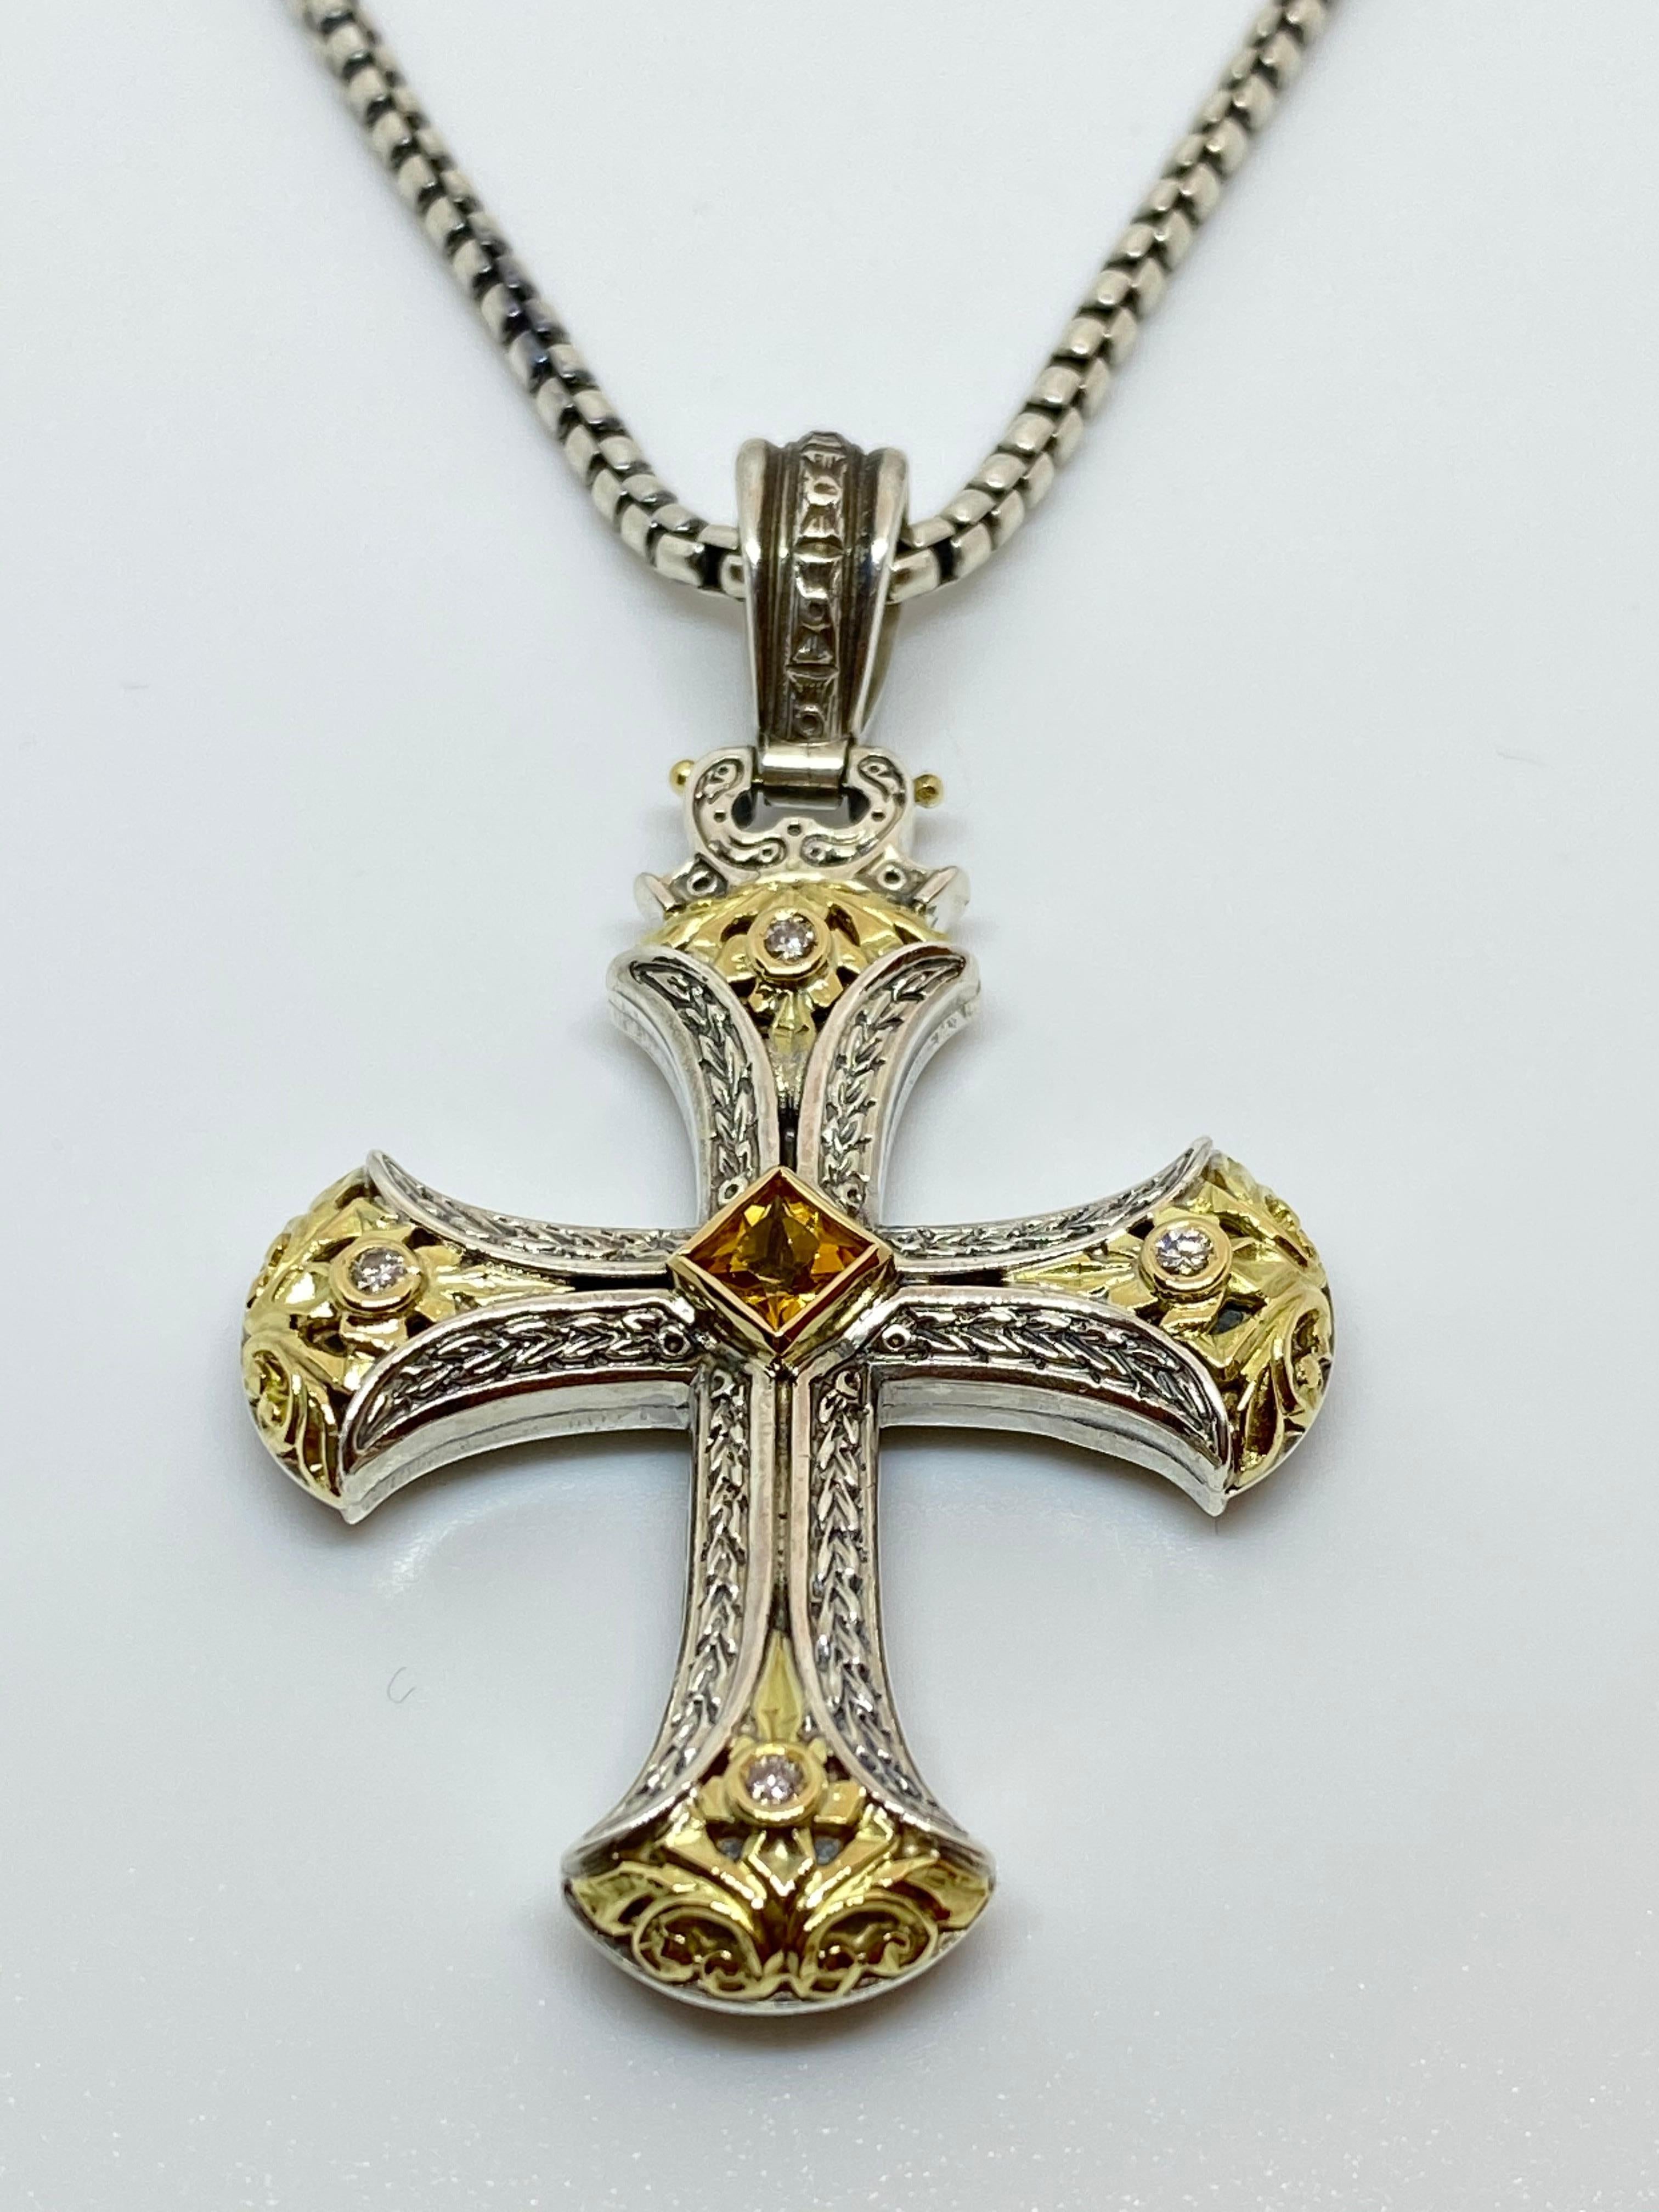 Der zweifarbige Kreuz-Anhänger von S.Georgios ist aus massivem 18-karätigem Gelbgold gefertigt und mit Einlegearbeiten versehen, die ihm einen einzigartigen Look verleihen. Dieser wunderschöne Kreuzschmuck besteht aus 4 Diamanten mit einem